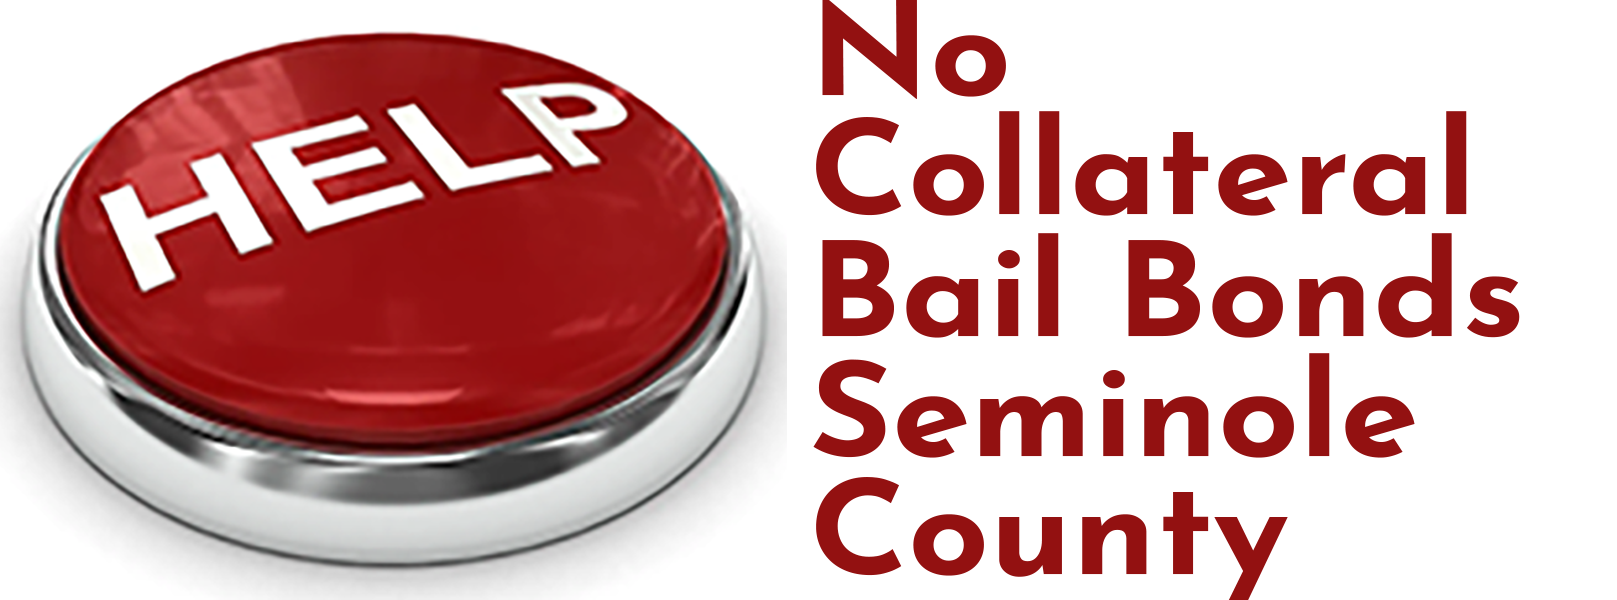 No Collateral Bail Bonds Seminole County